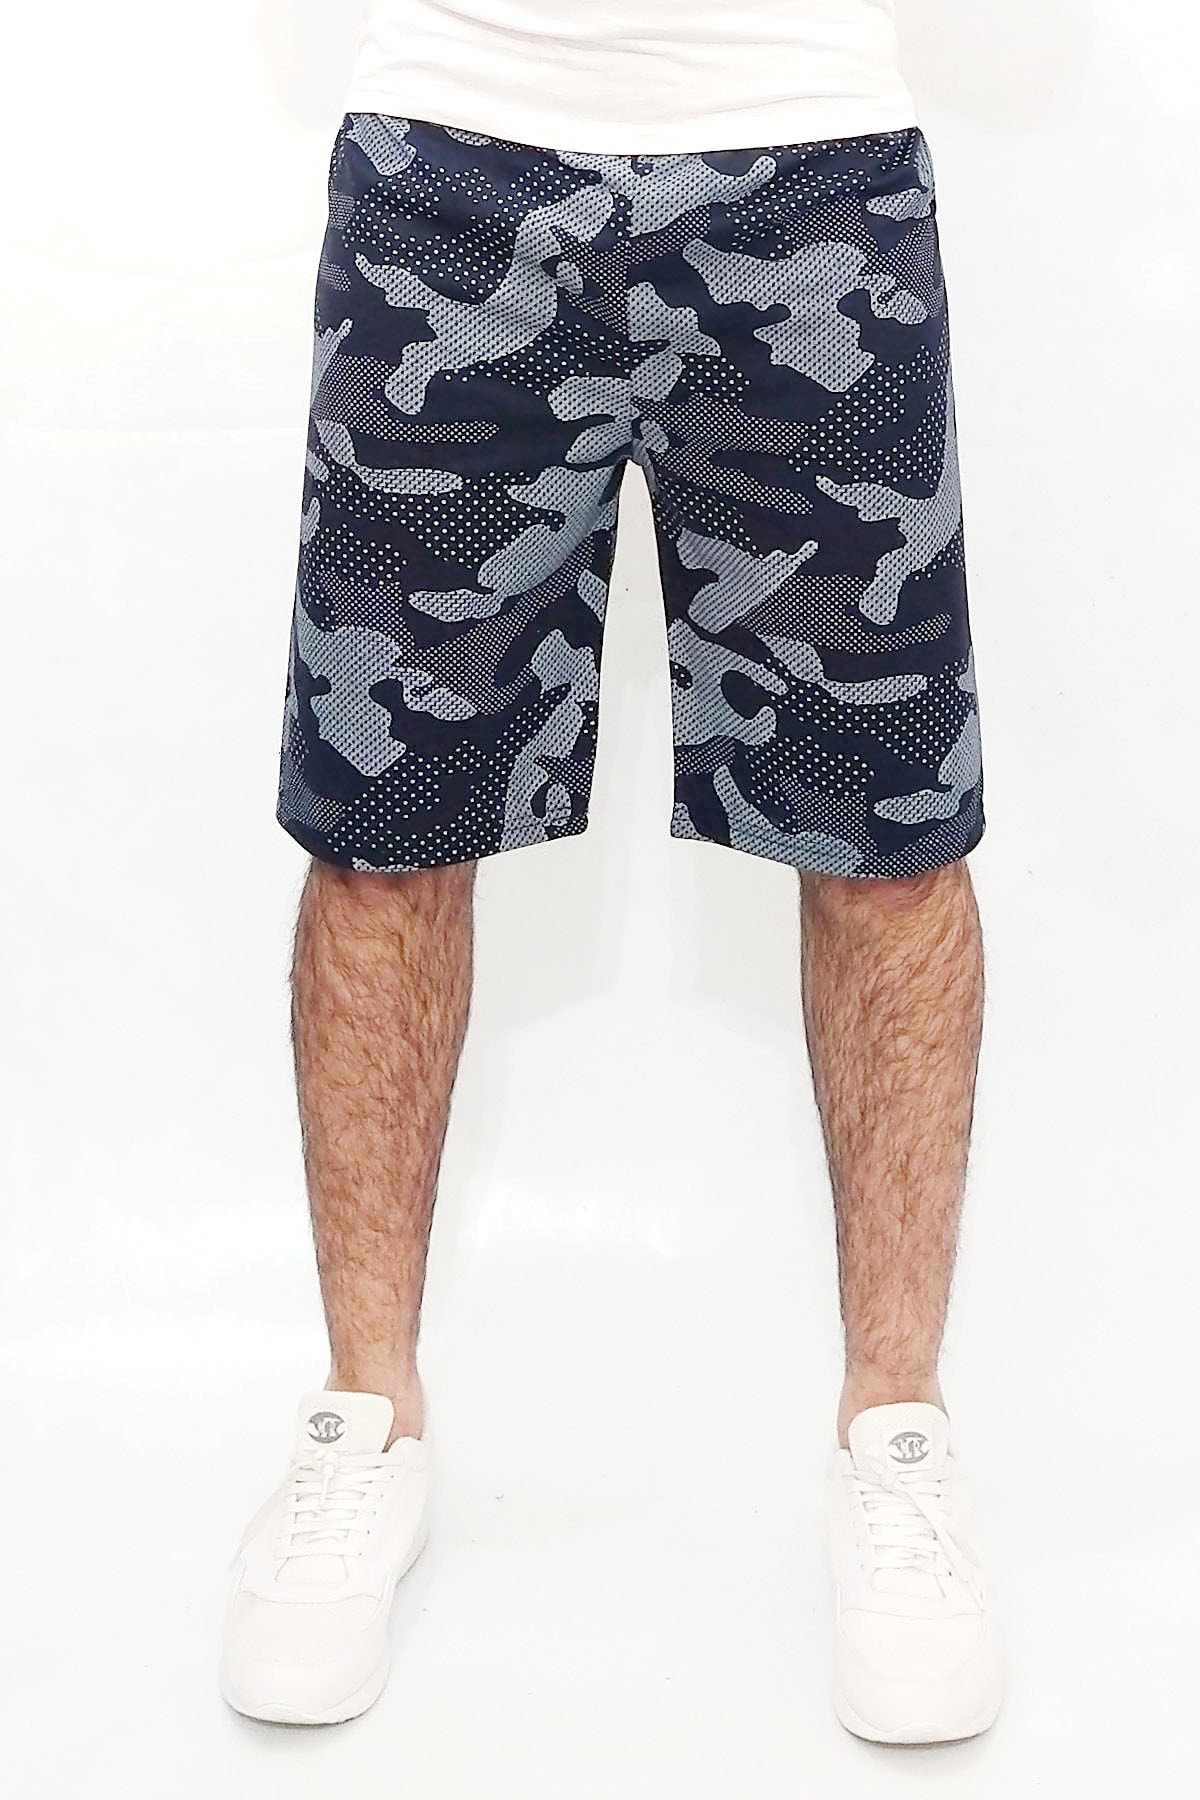 wingetstar Erkek Lacivert Kamuflaj Cepsiz Kumaş 20/1 %100 Pamuk Rahat Kalıp Günlük Baskılı Bermuda Şort